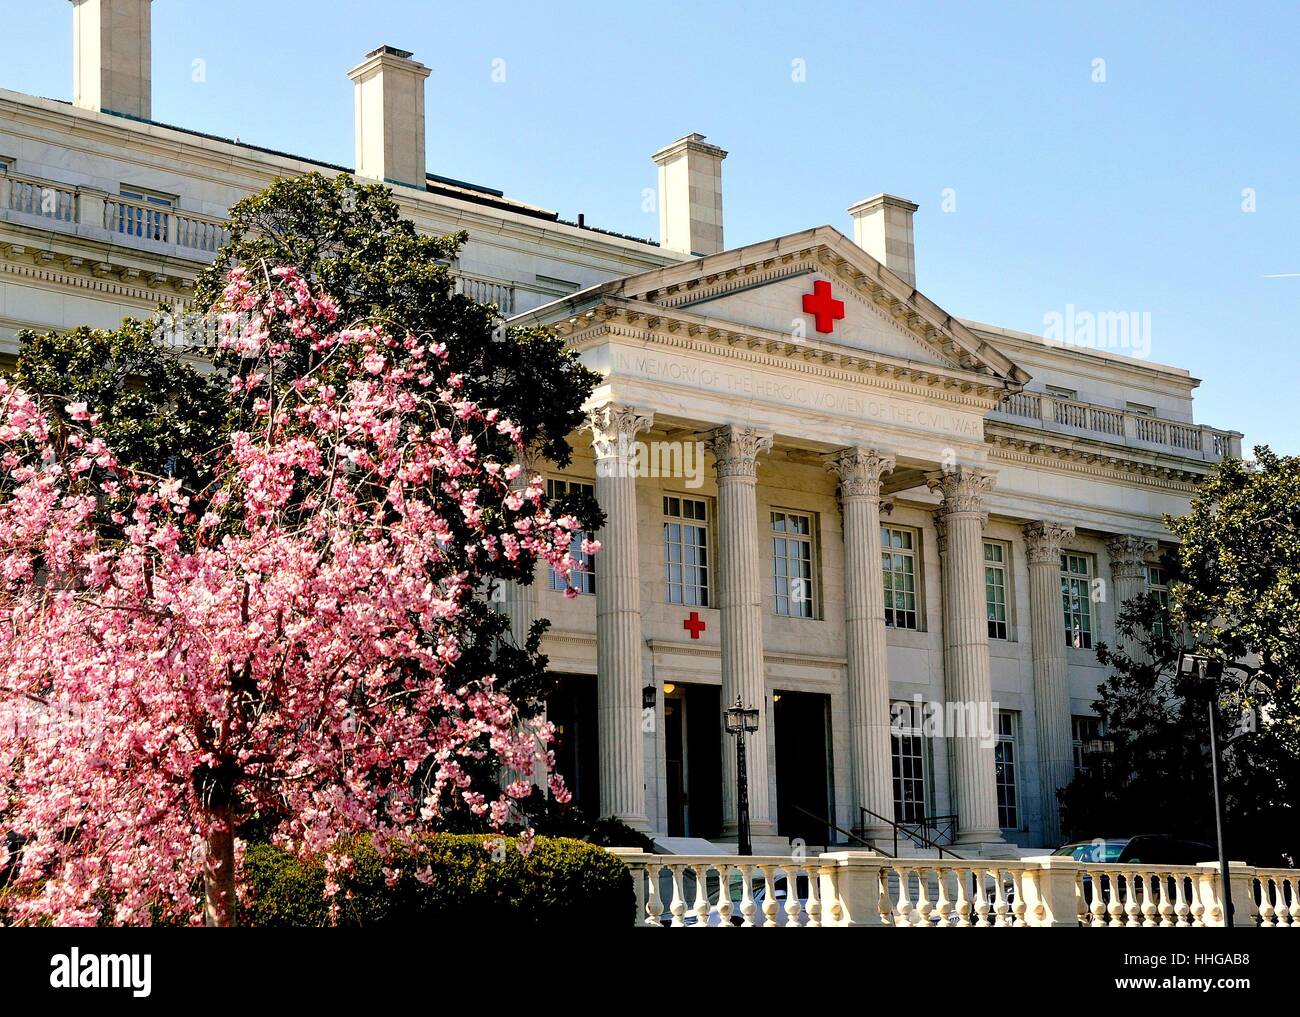 Washington, DC - 10 Avril 2014 : La Croix-Rouge américaine s'appuyant sur 17th Street NW avec rose à fleurs Magnolia Banque D'Images